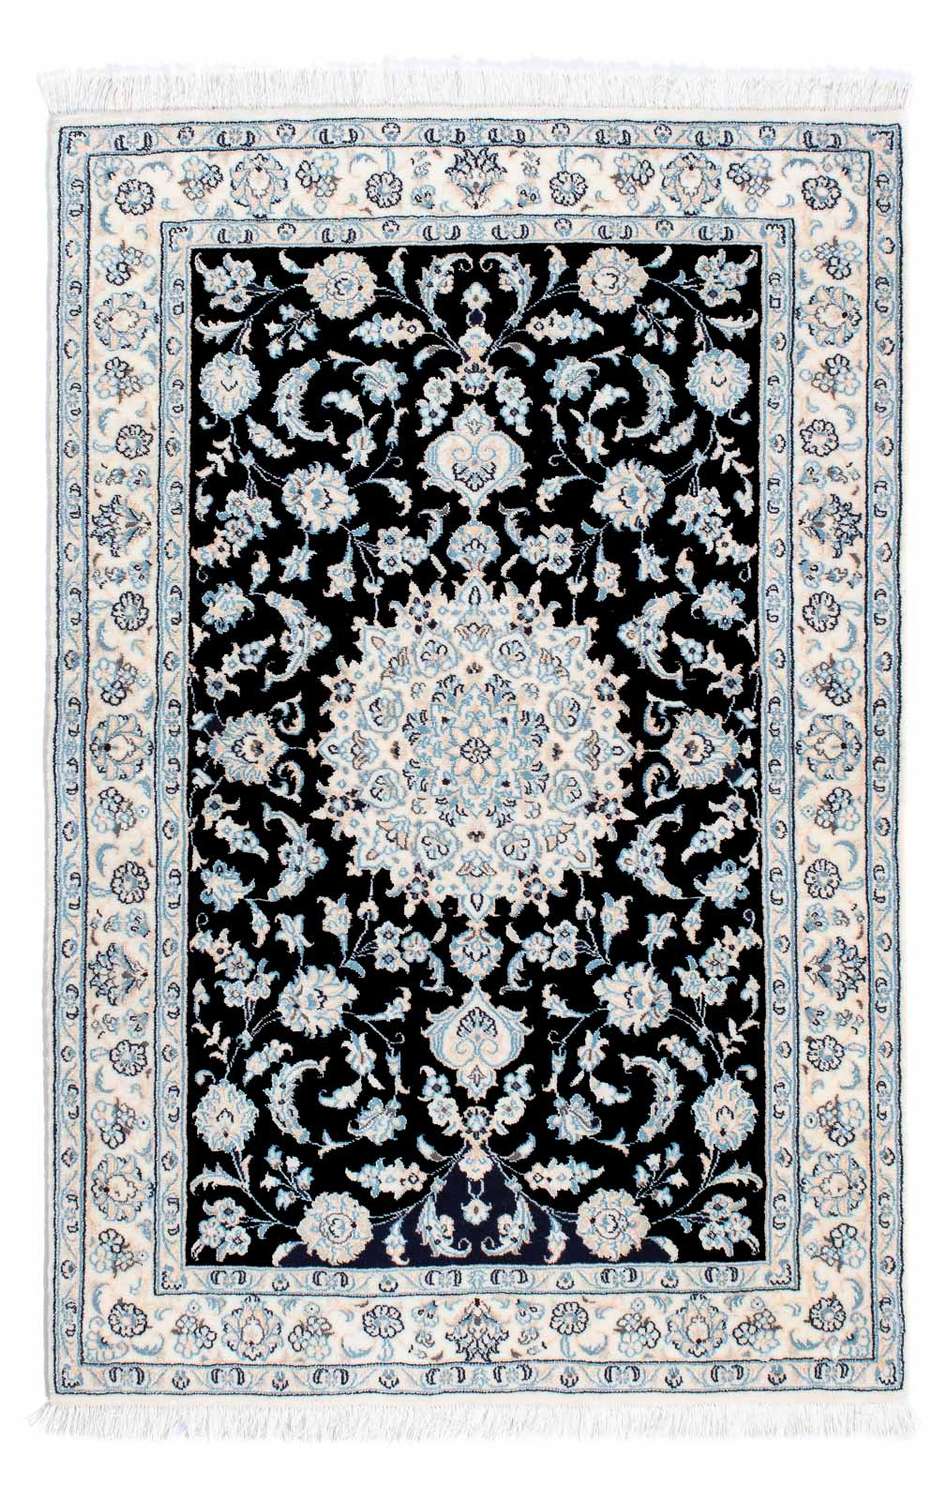 Dywan perski - Nain - Królewski - 150 x 100 cm - ciemnoniebieski